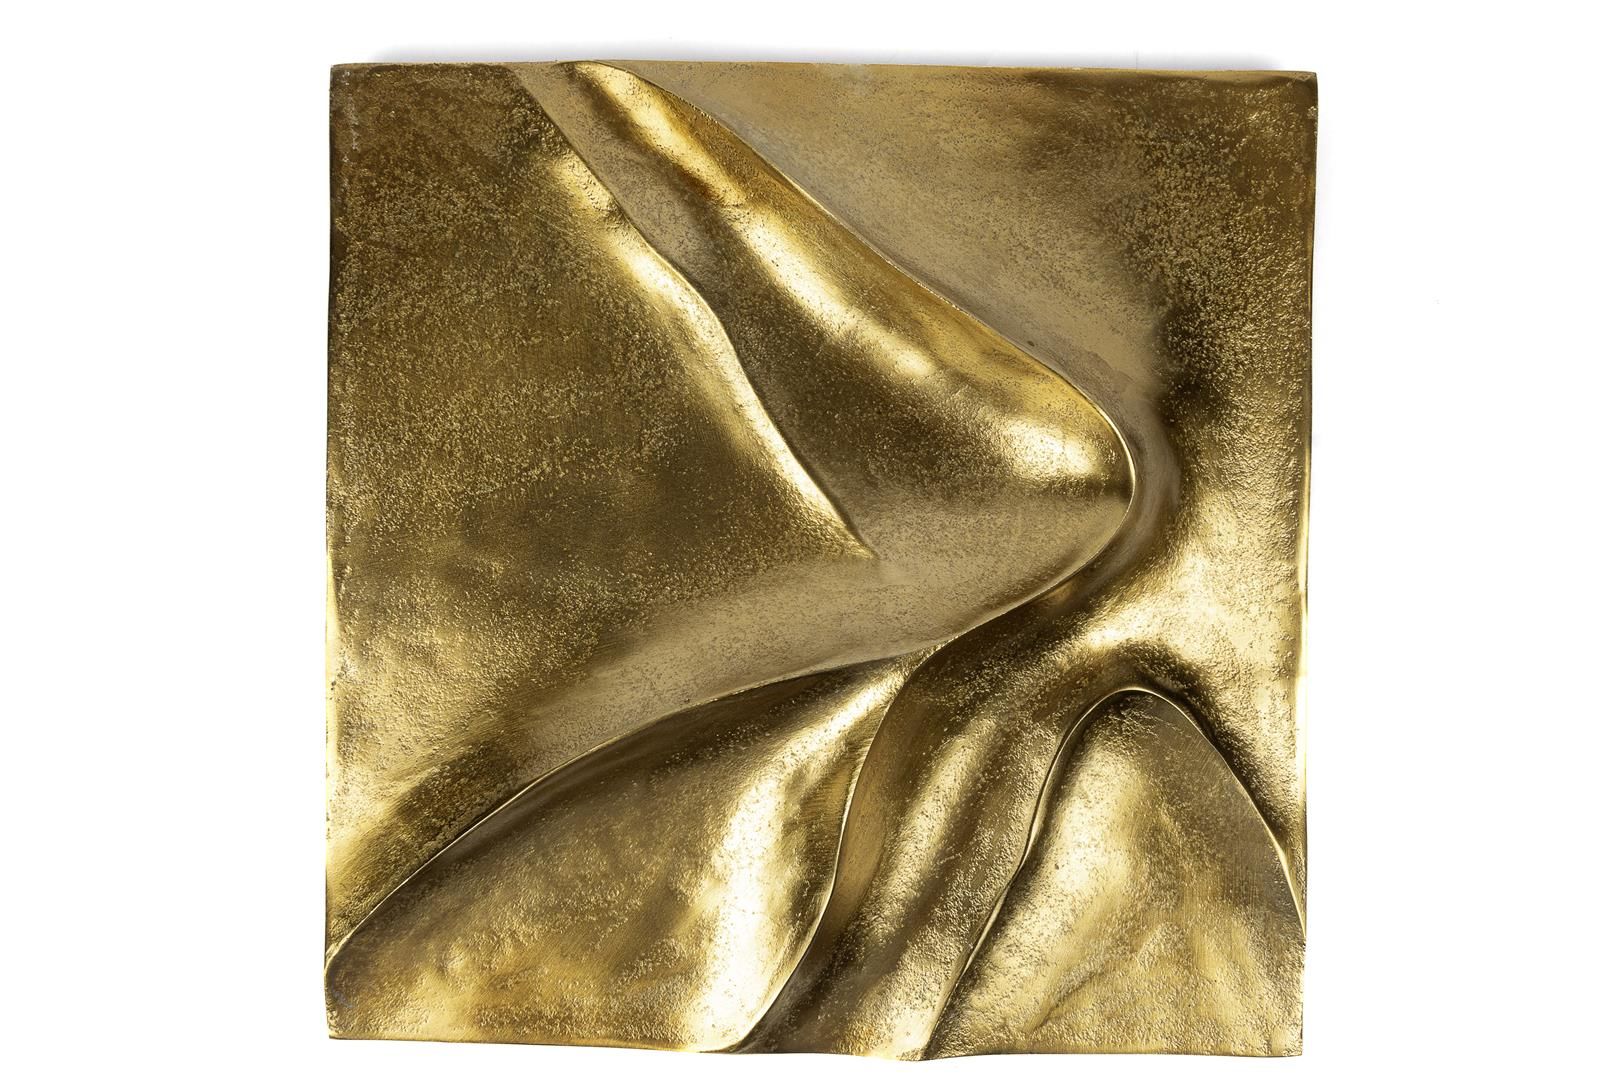 Gold Wavy Duvar Objesi 41x41x6cm